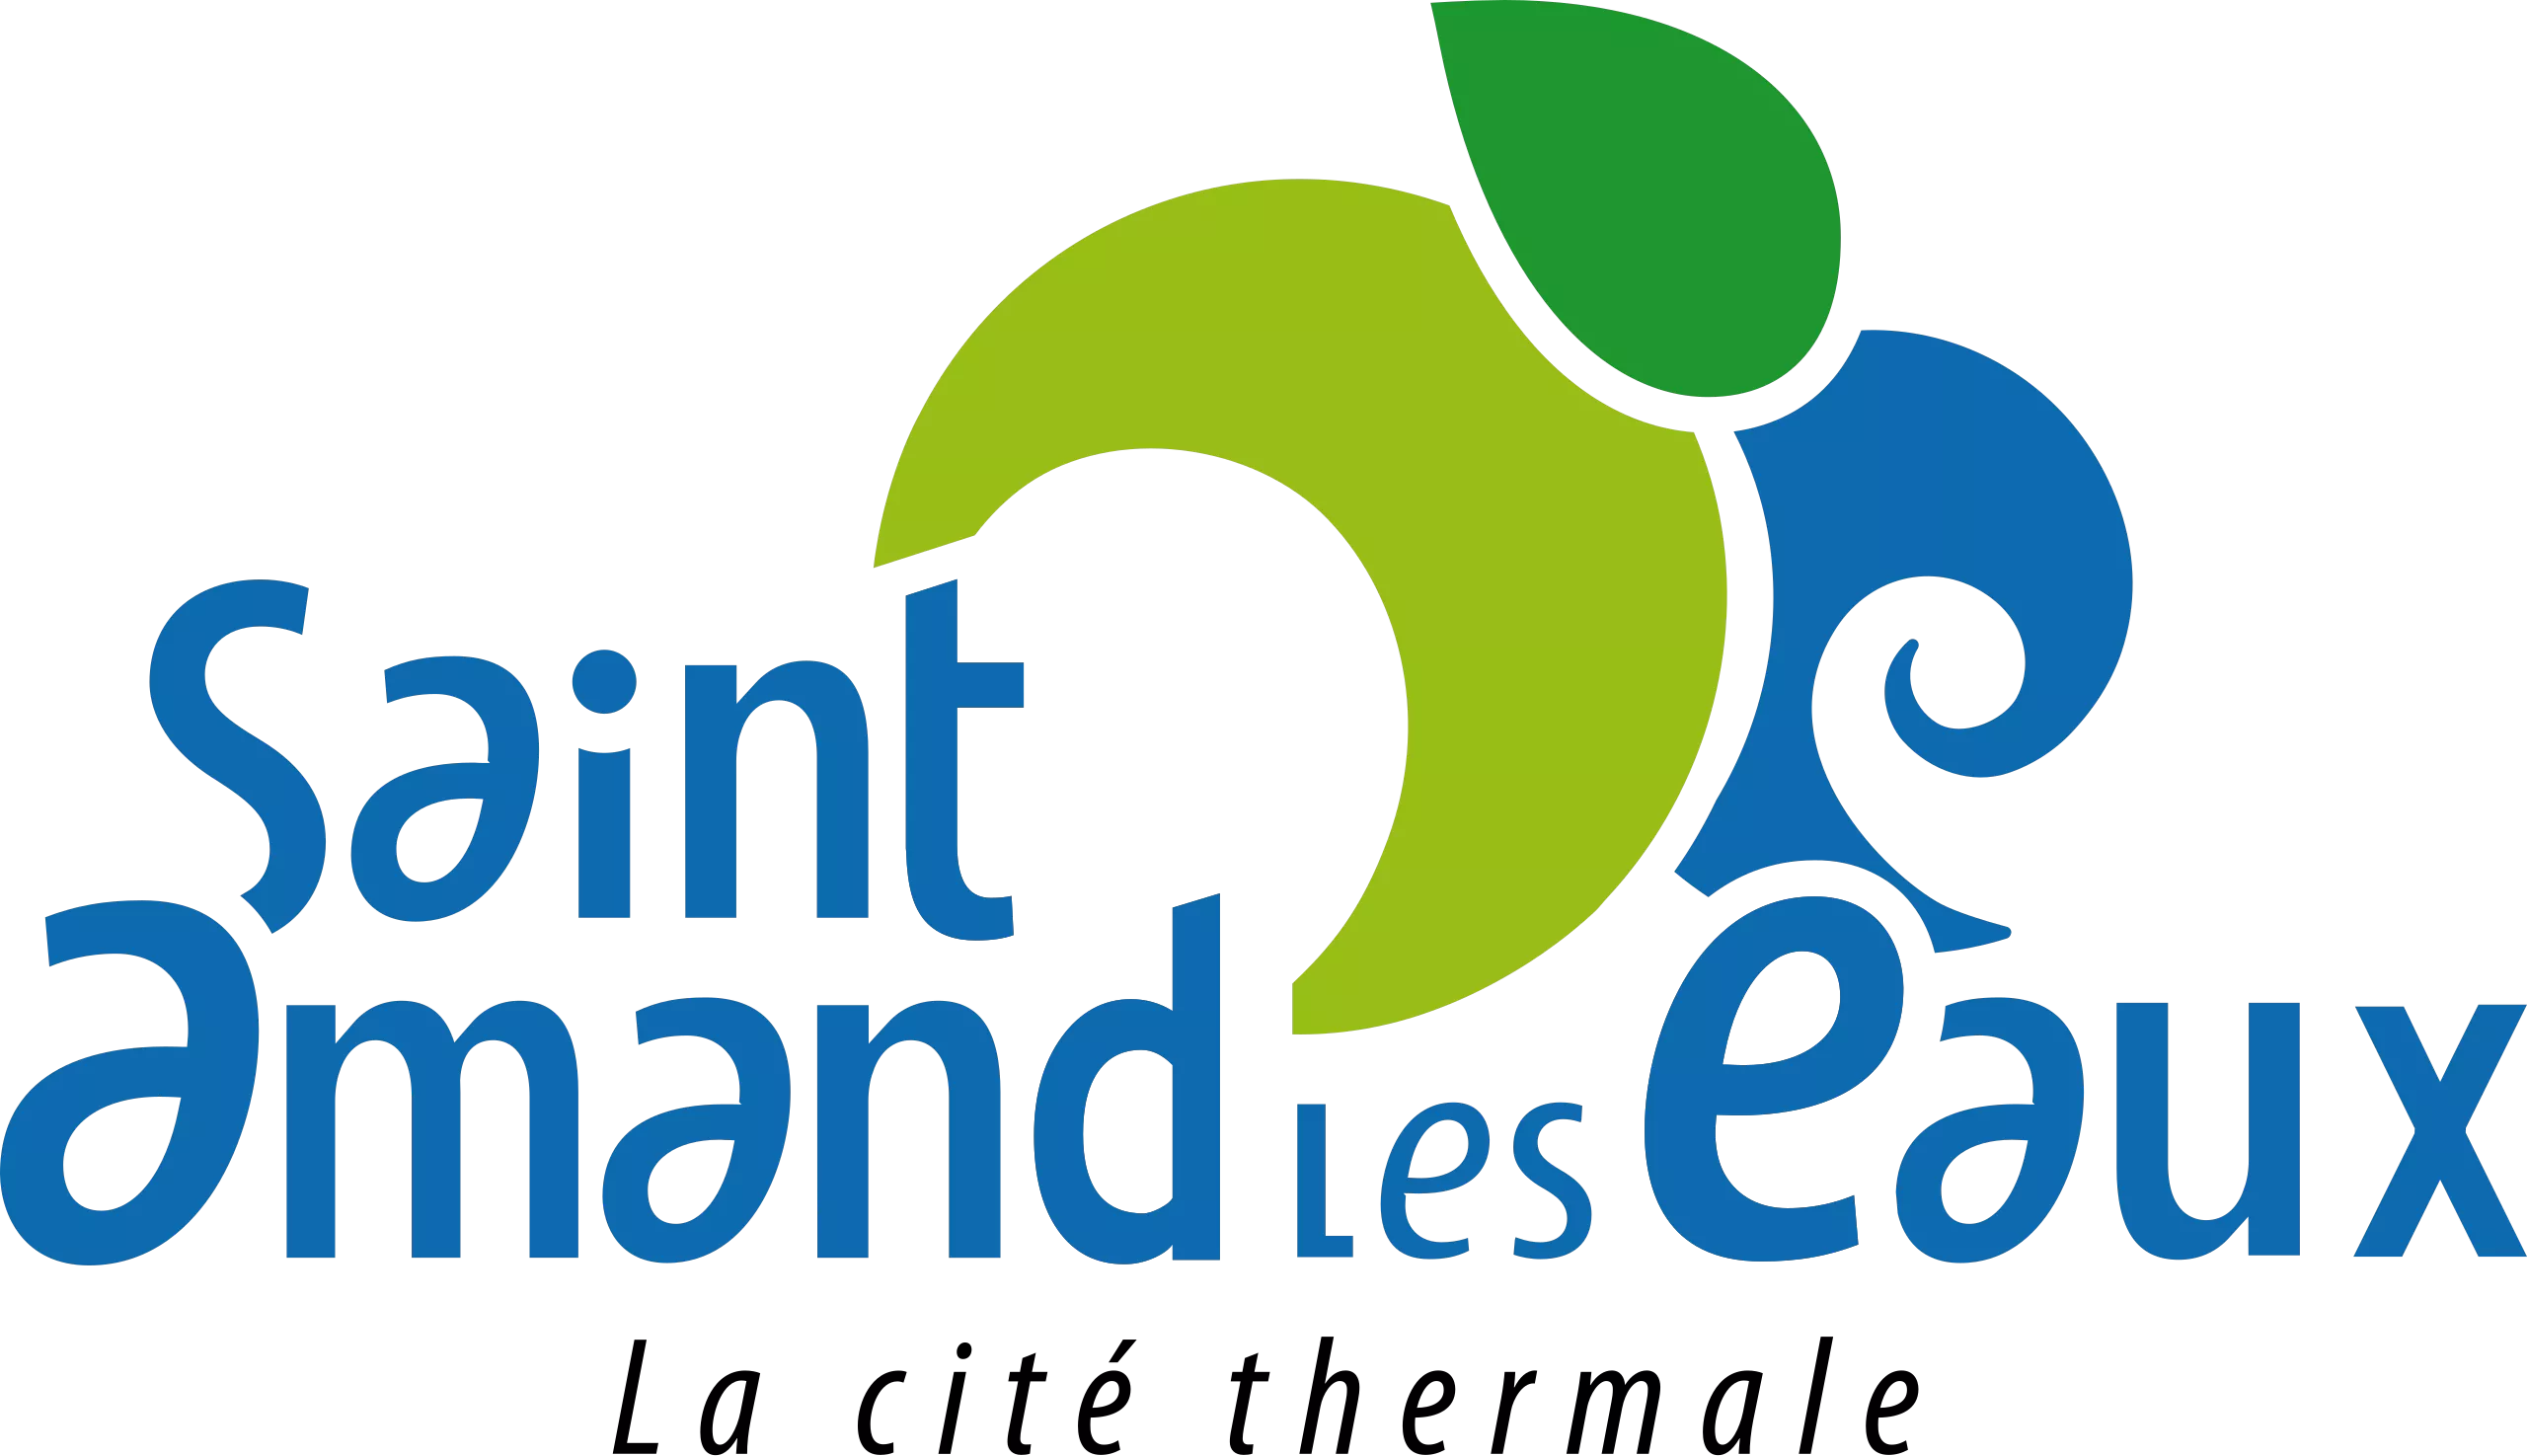 Logo Saint-Amand-les-Eaux